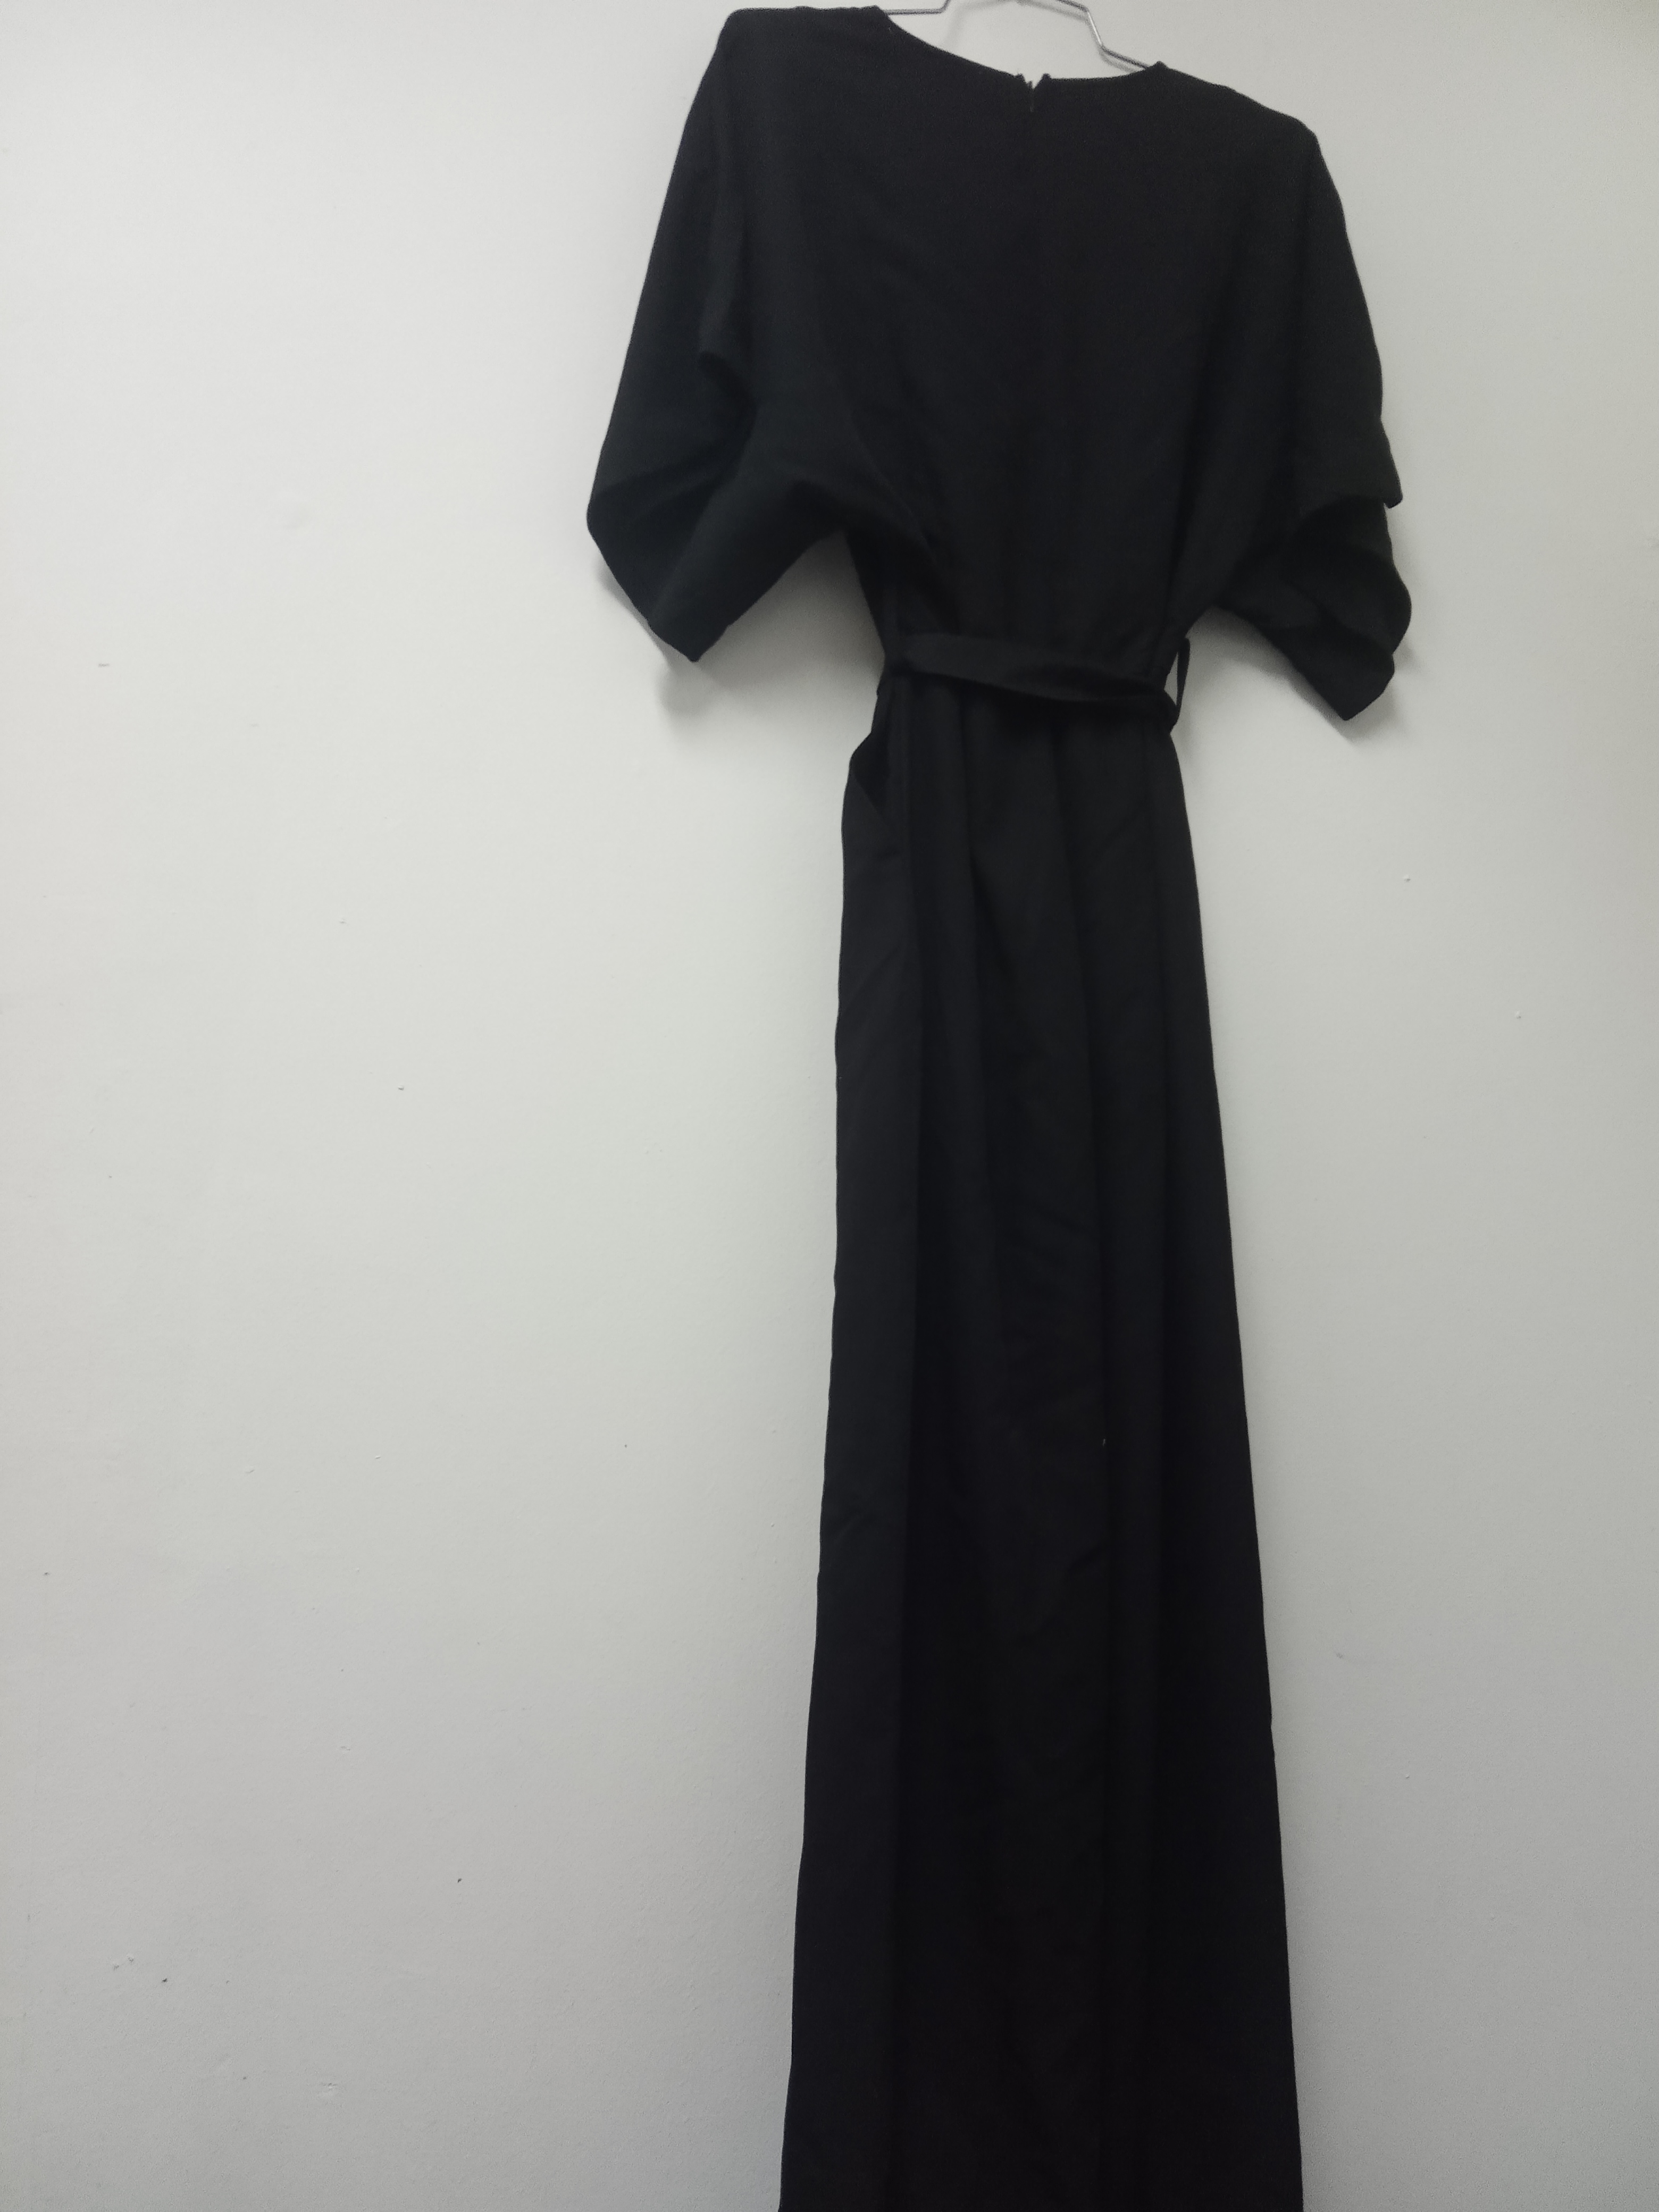 תמונה 2 ,אוברול מנגו שחור חדש סמול למכירה בתל אביב ביגוד ואביזרים  שמלות וחליפות